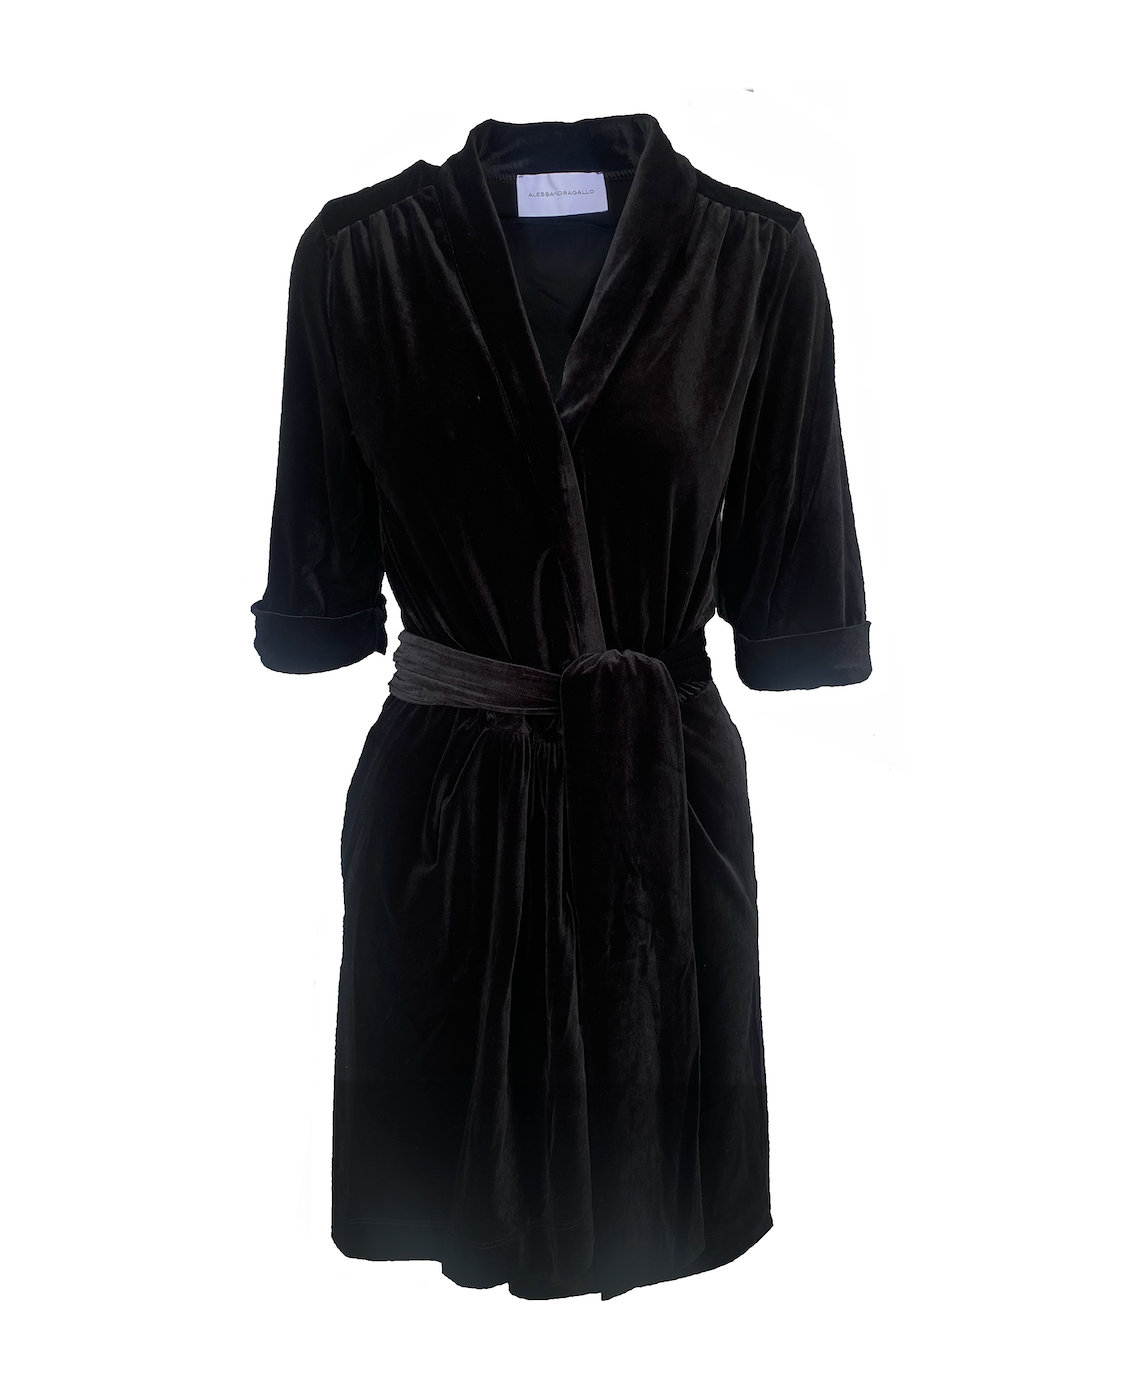 GINEVRA MINI - short black chenille dress